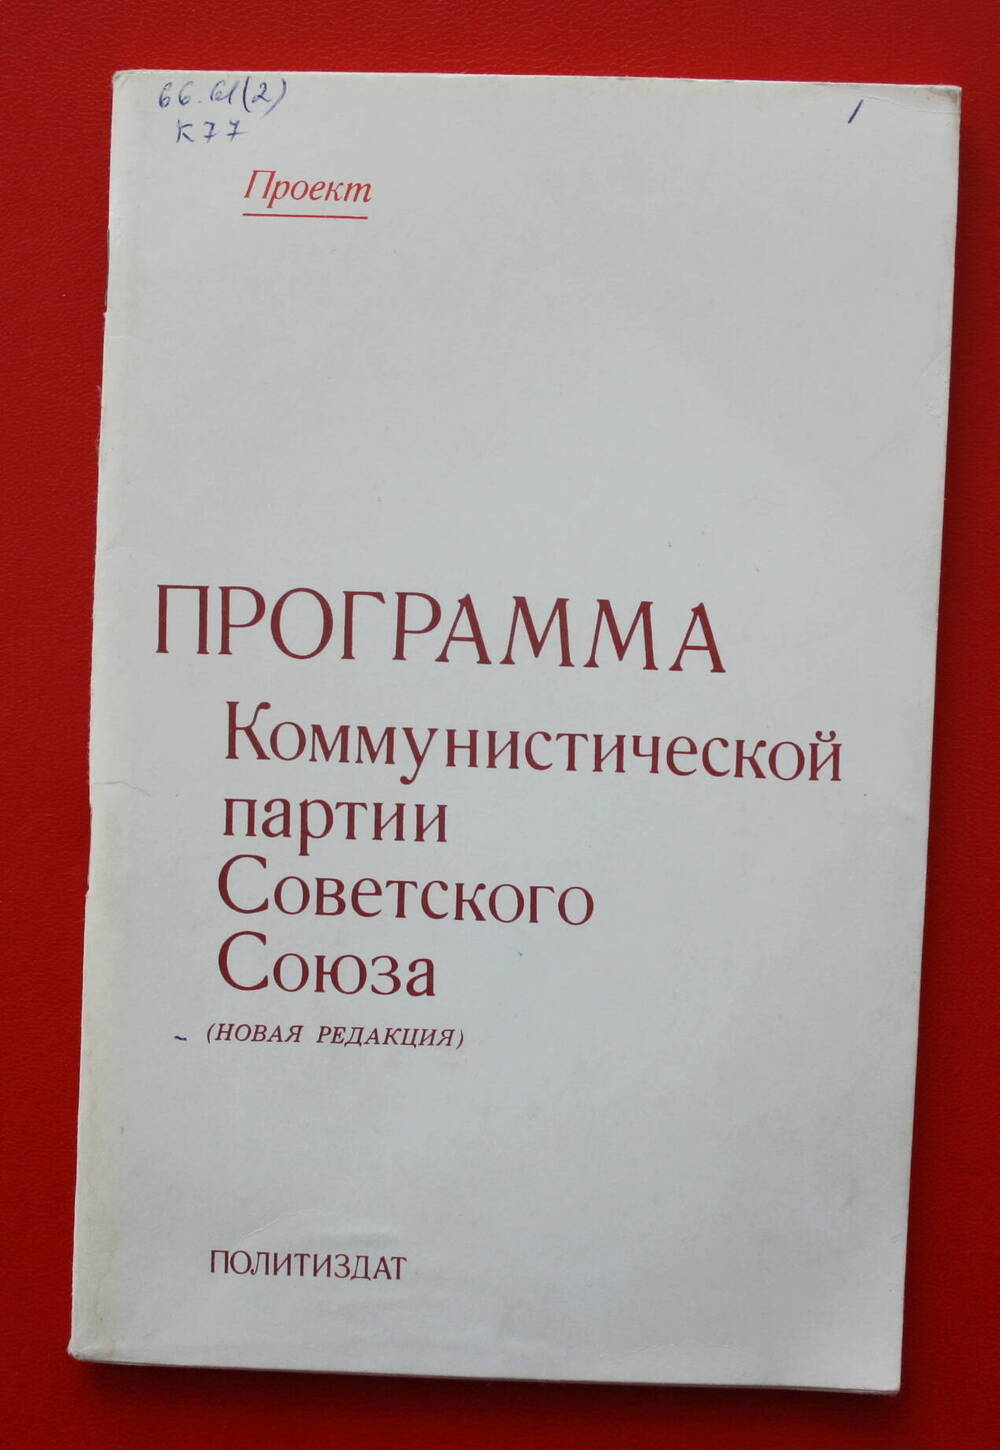 Книга.  «Программа Коммунистической партии Советского Союза».